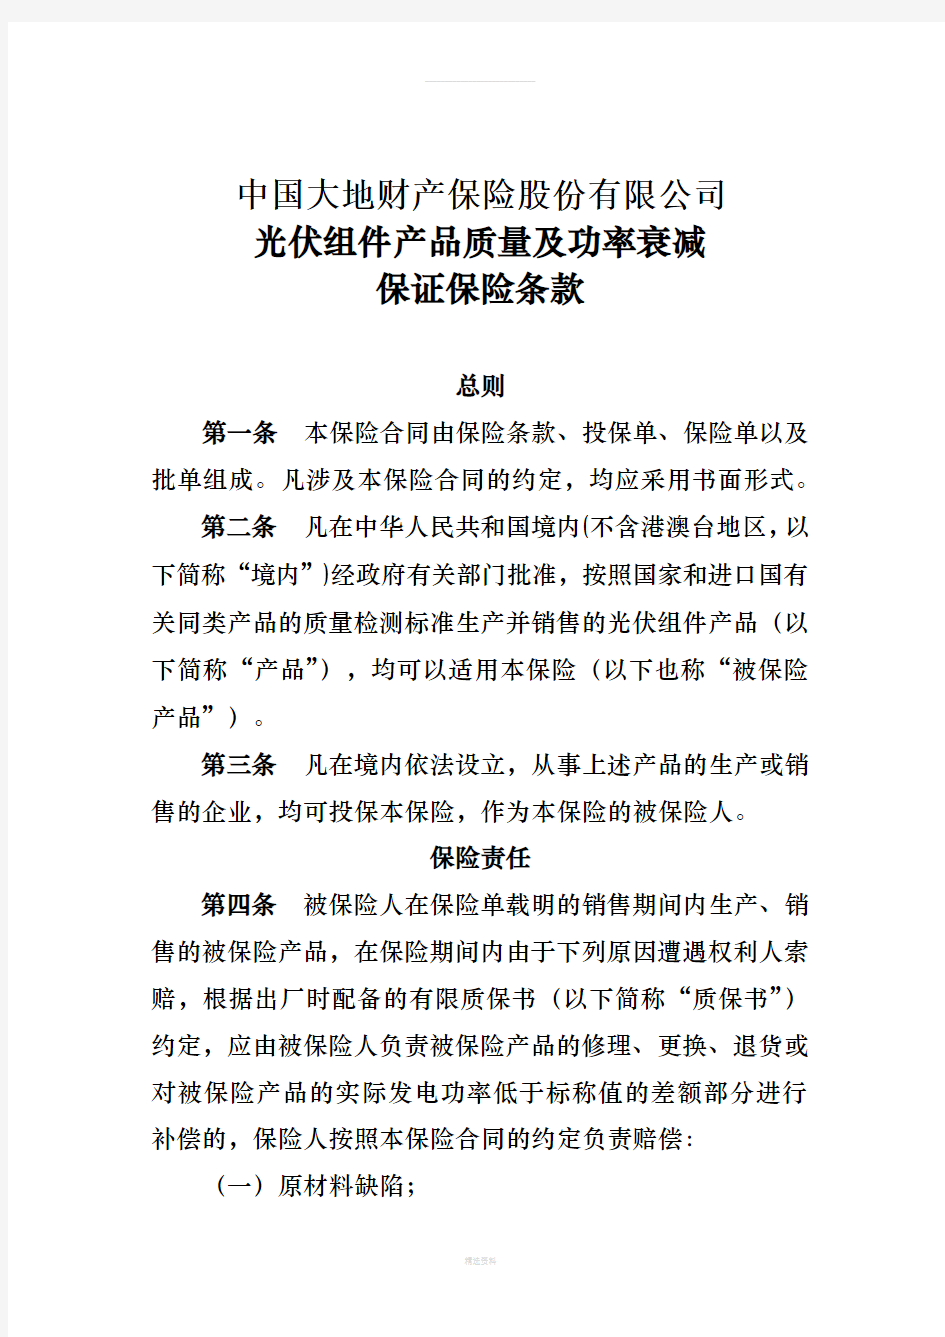 中国大地财产保险股份有限公司光伏组件产品质量及功率衰减保证保险条款(1)